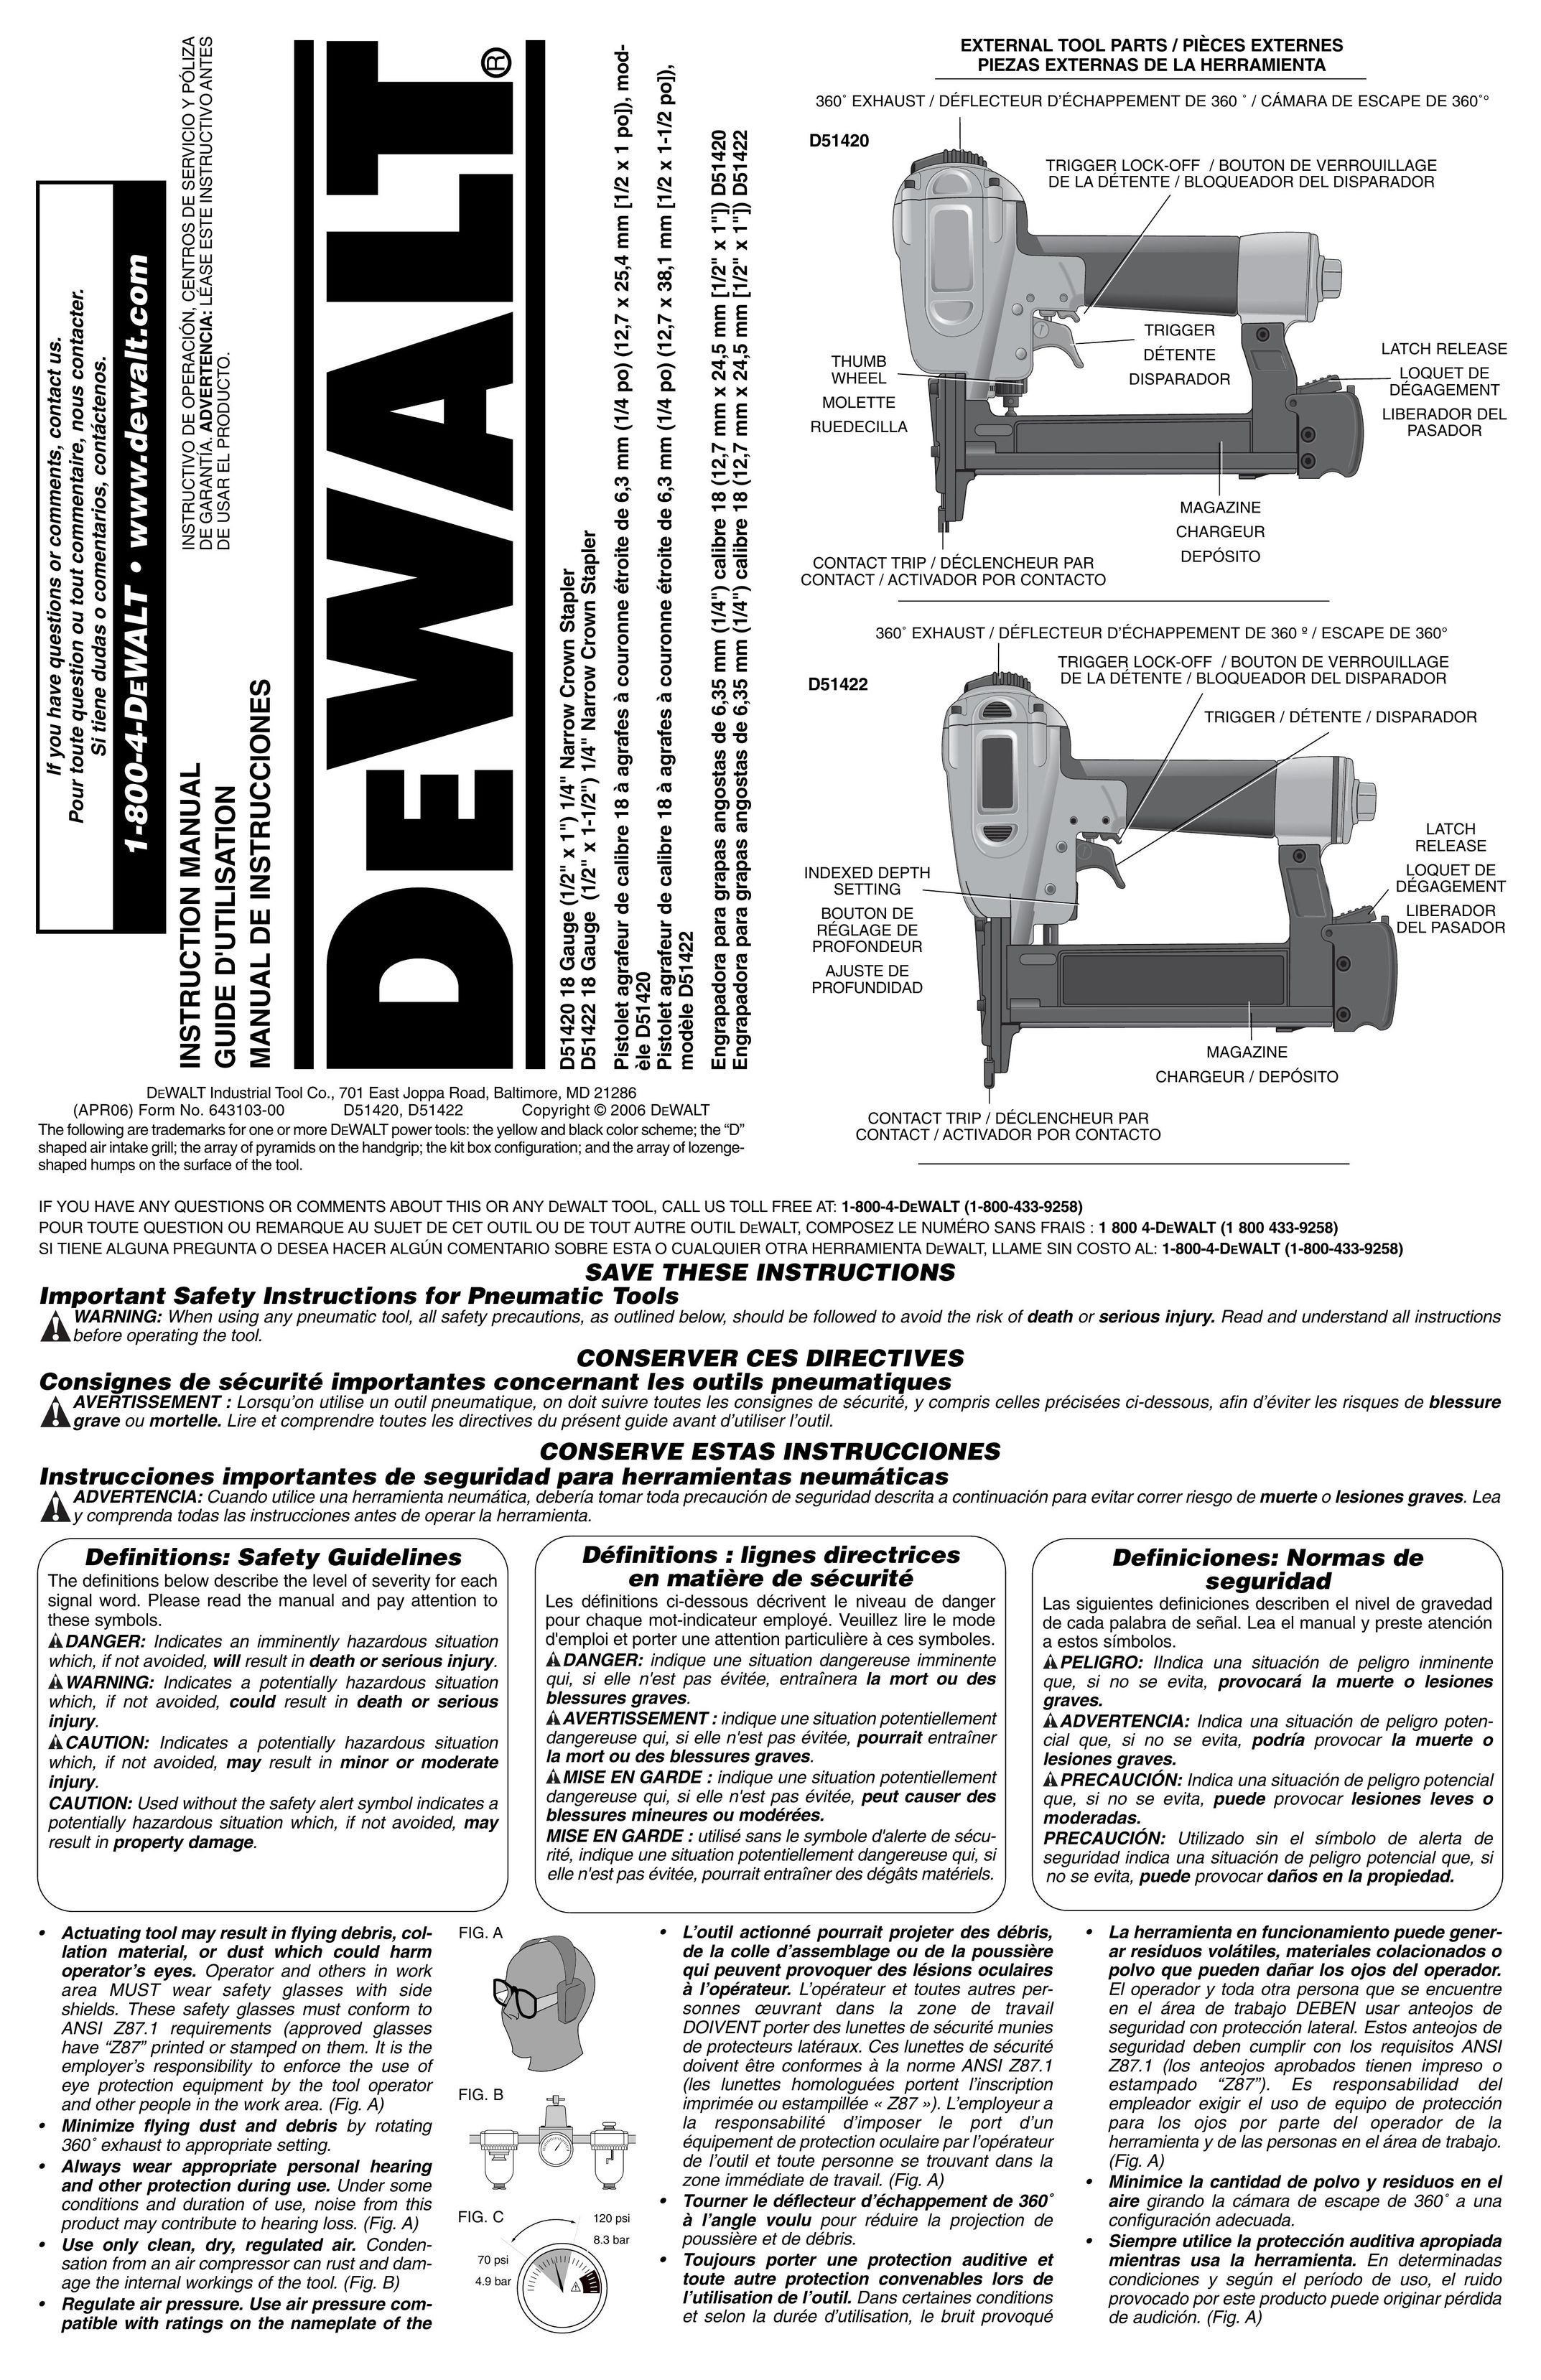 DeWalt D51422 Staple Gun User Manual